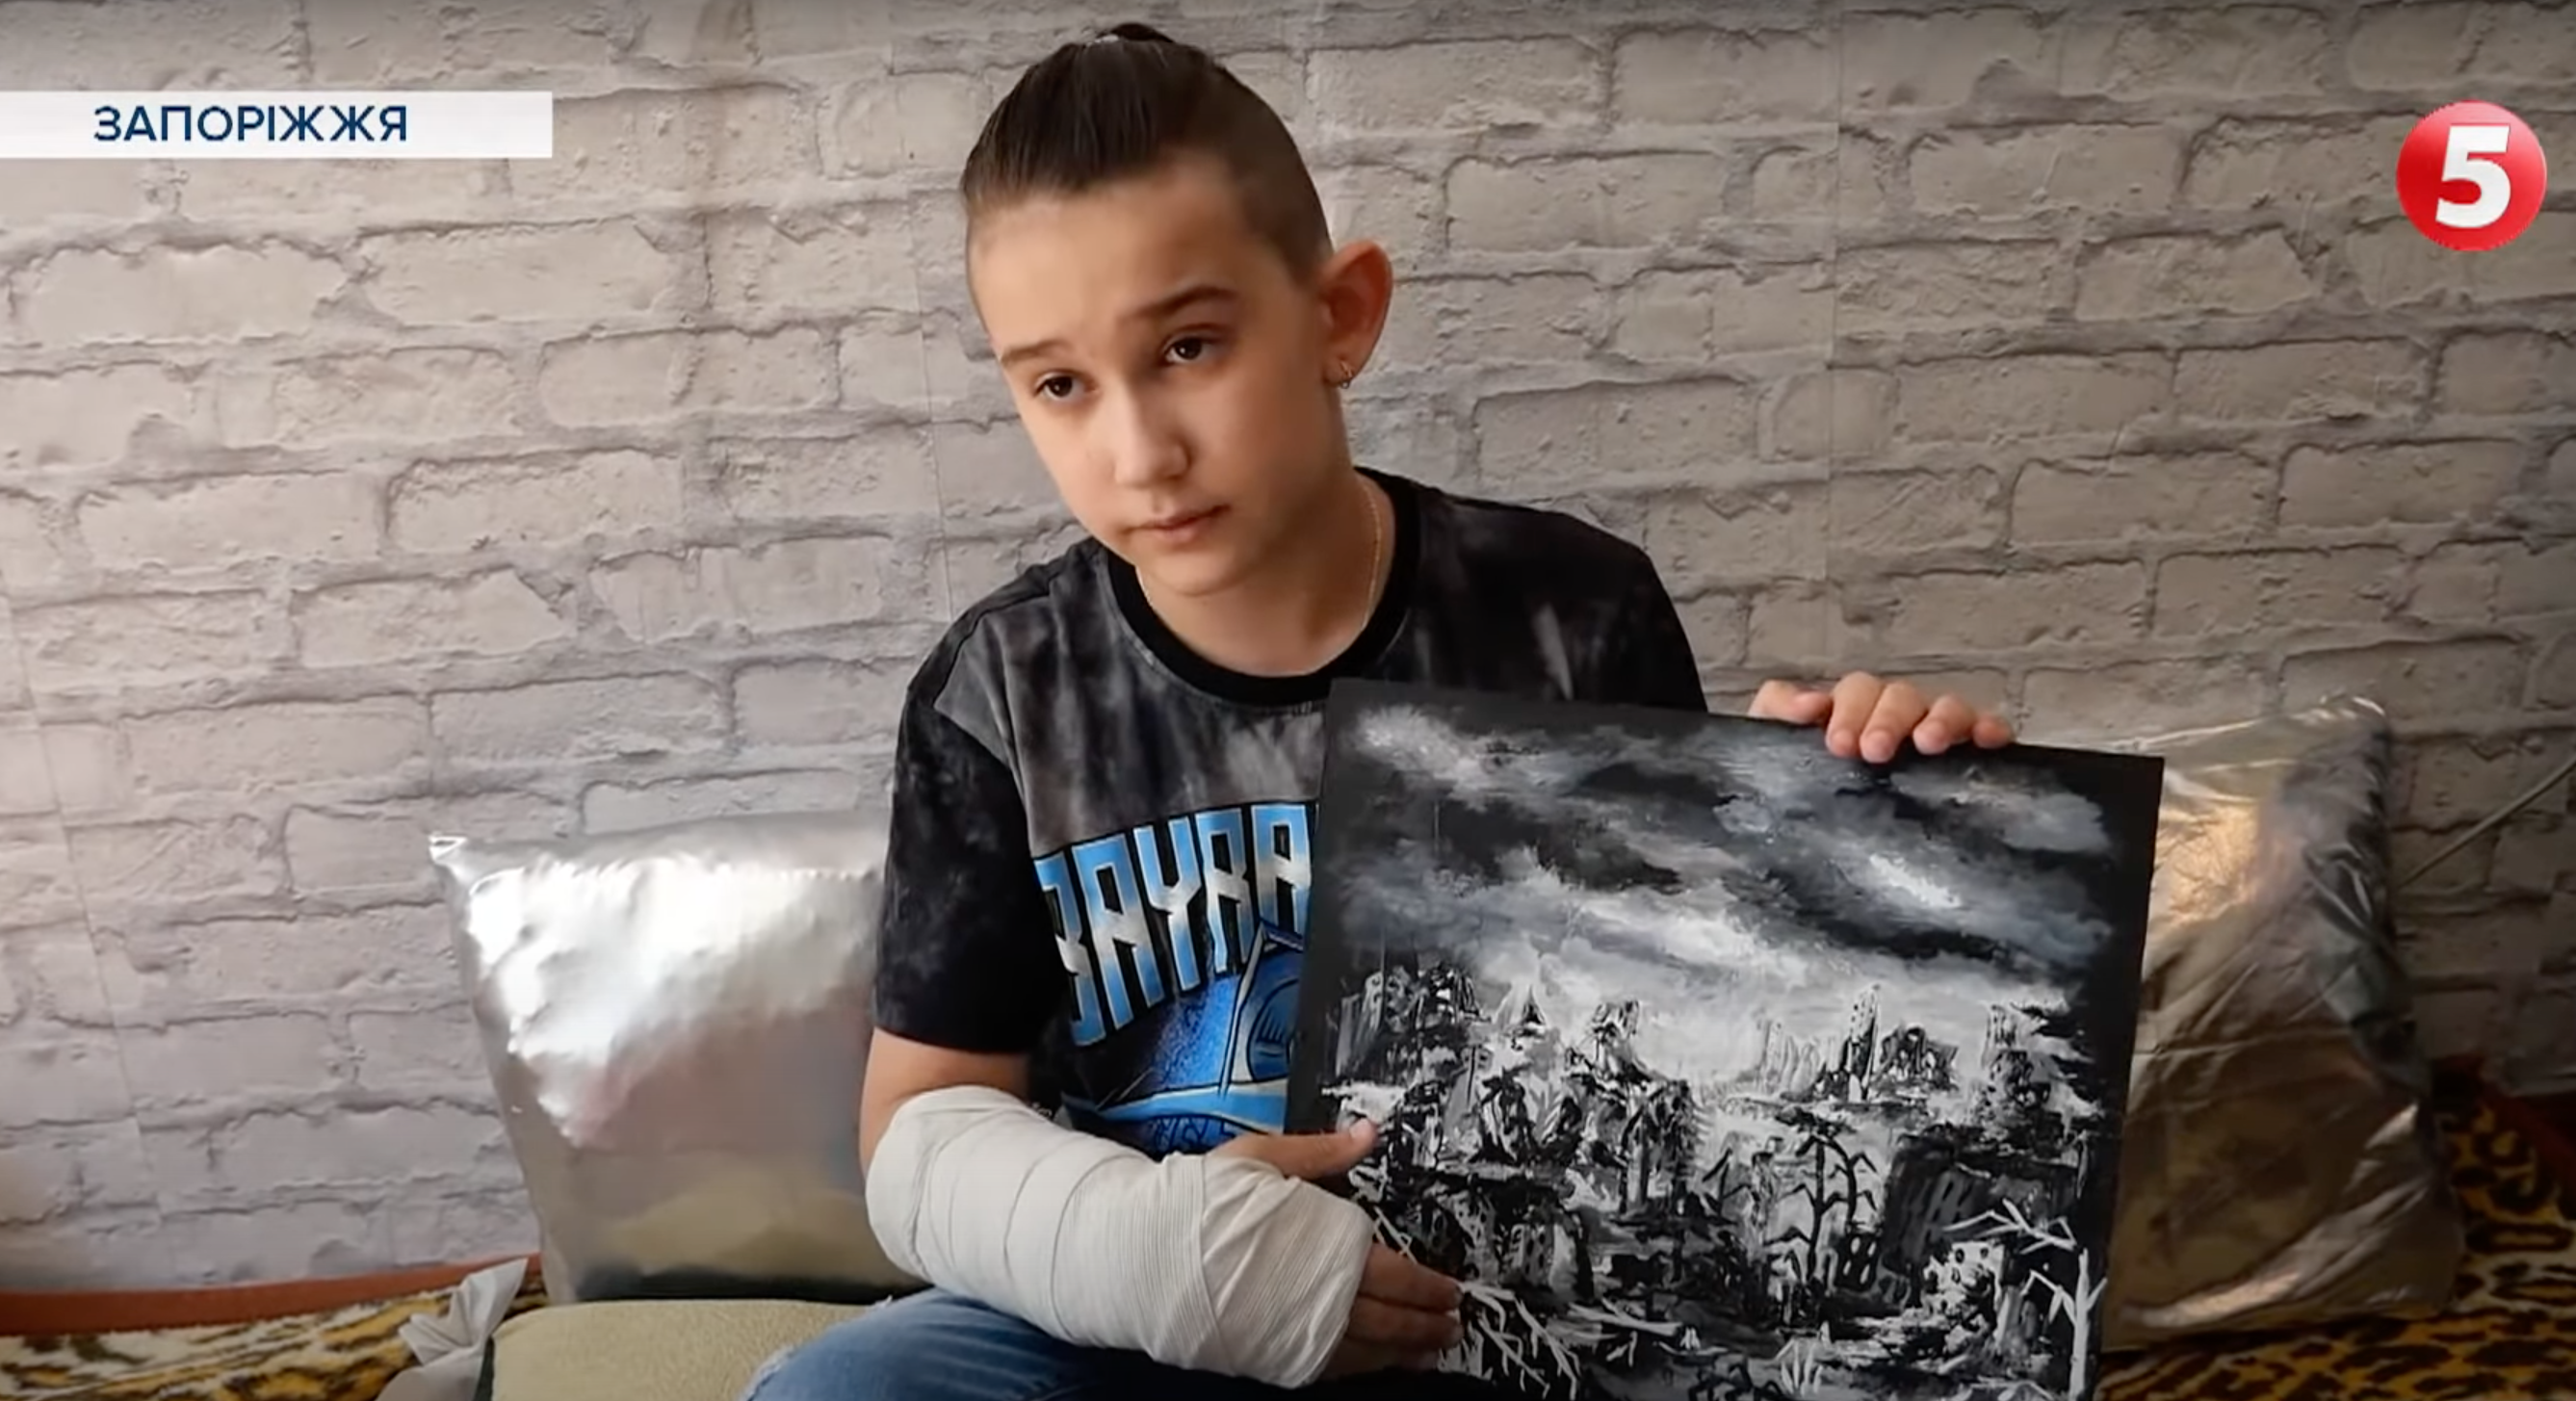 “Ще восени казав, що наближається війна”: 10-річний художник із Бердянська зібрав 20 тис. для ЗСУ